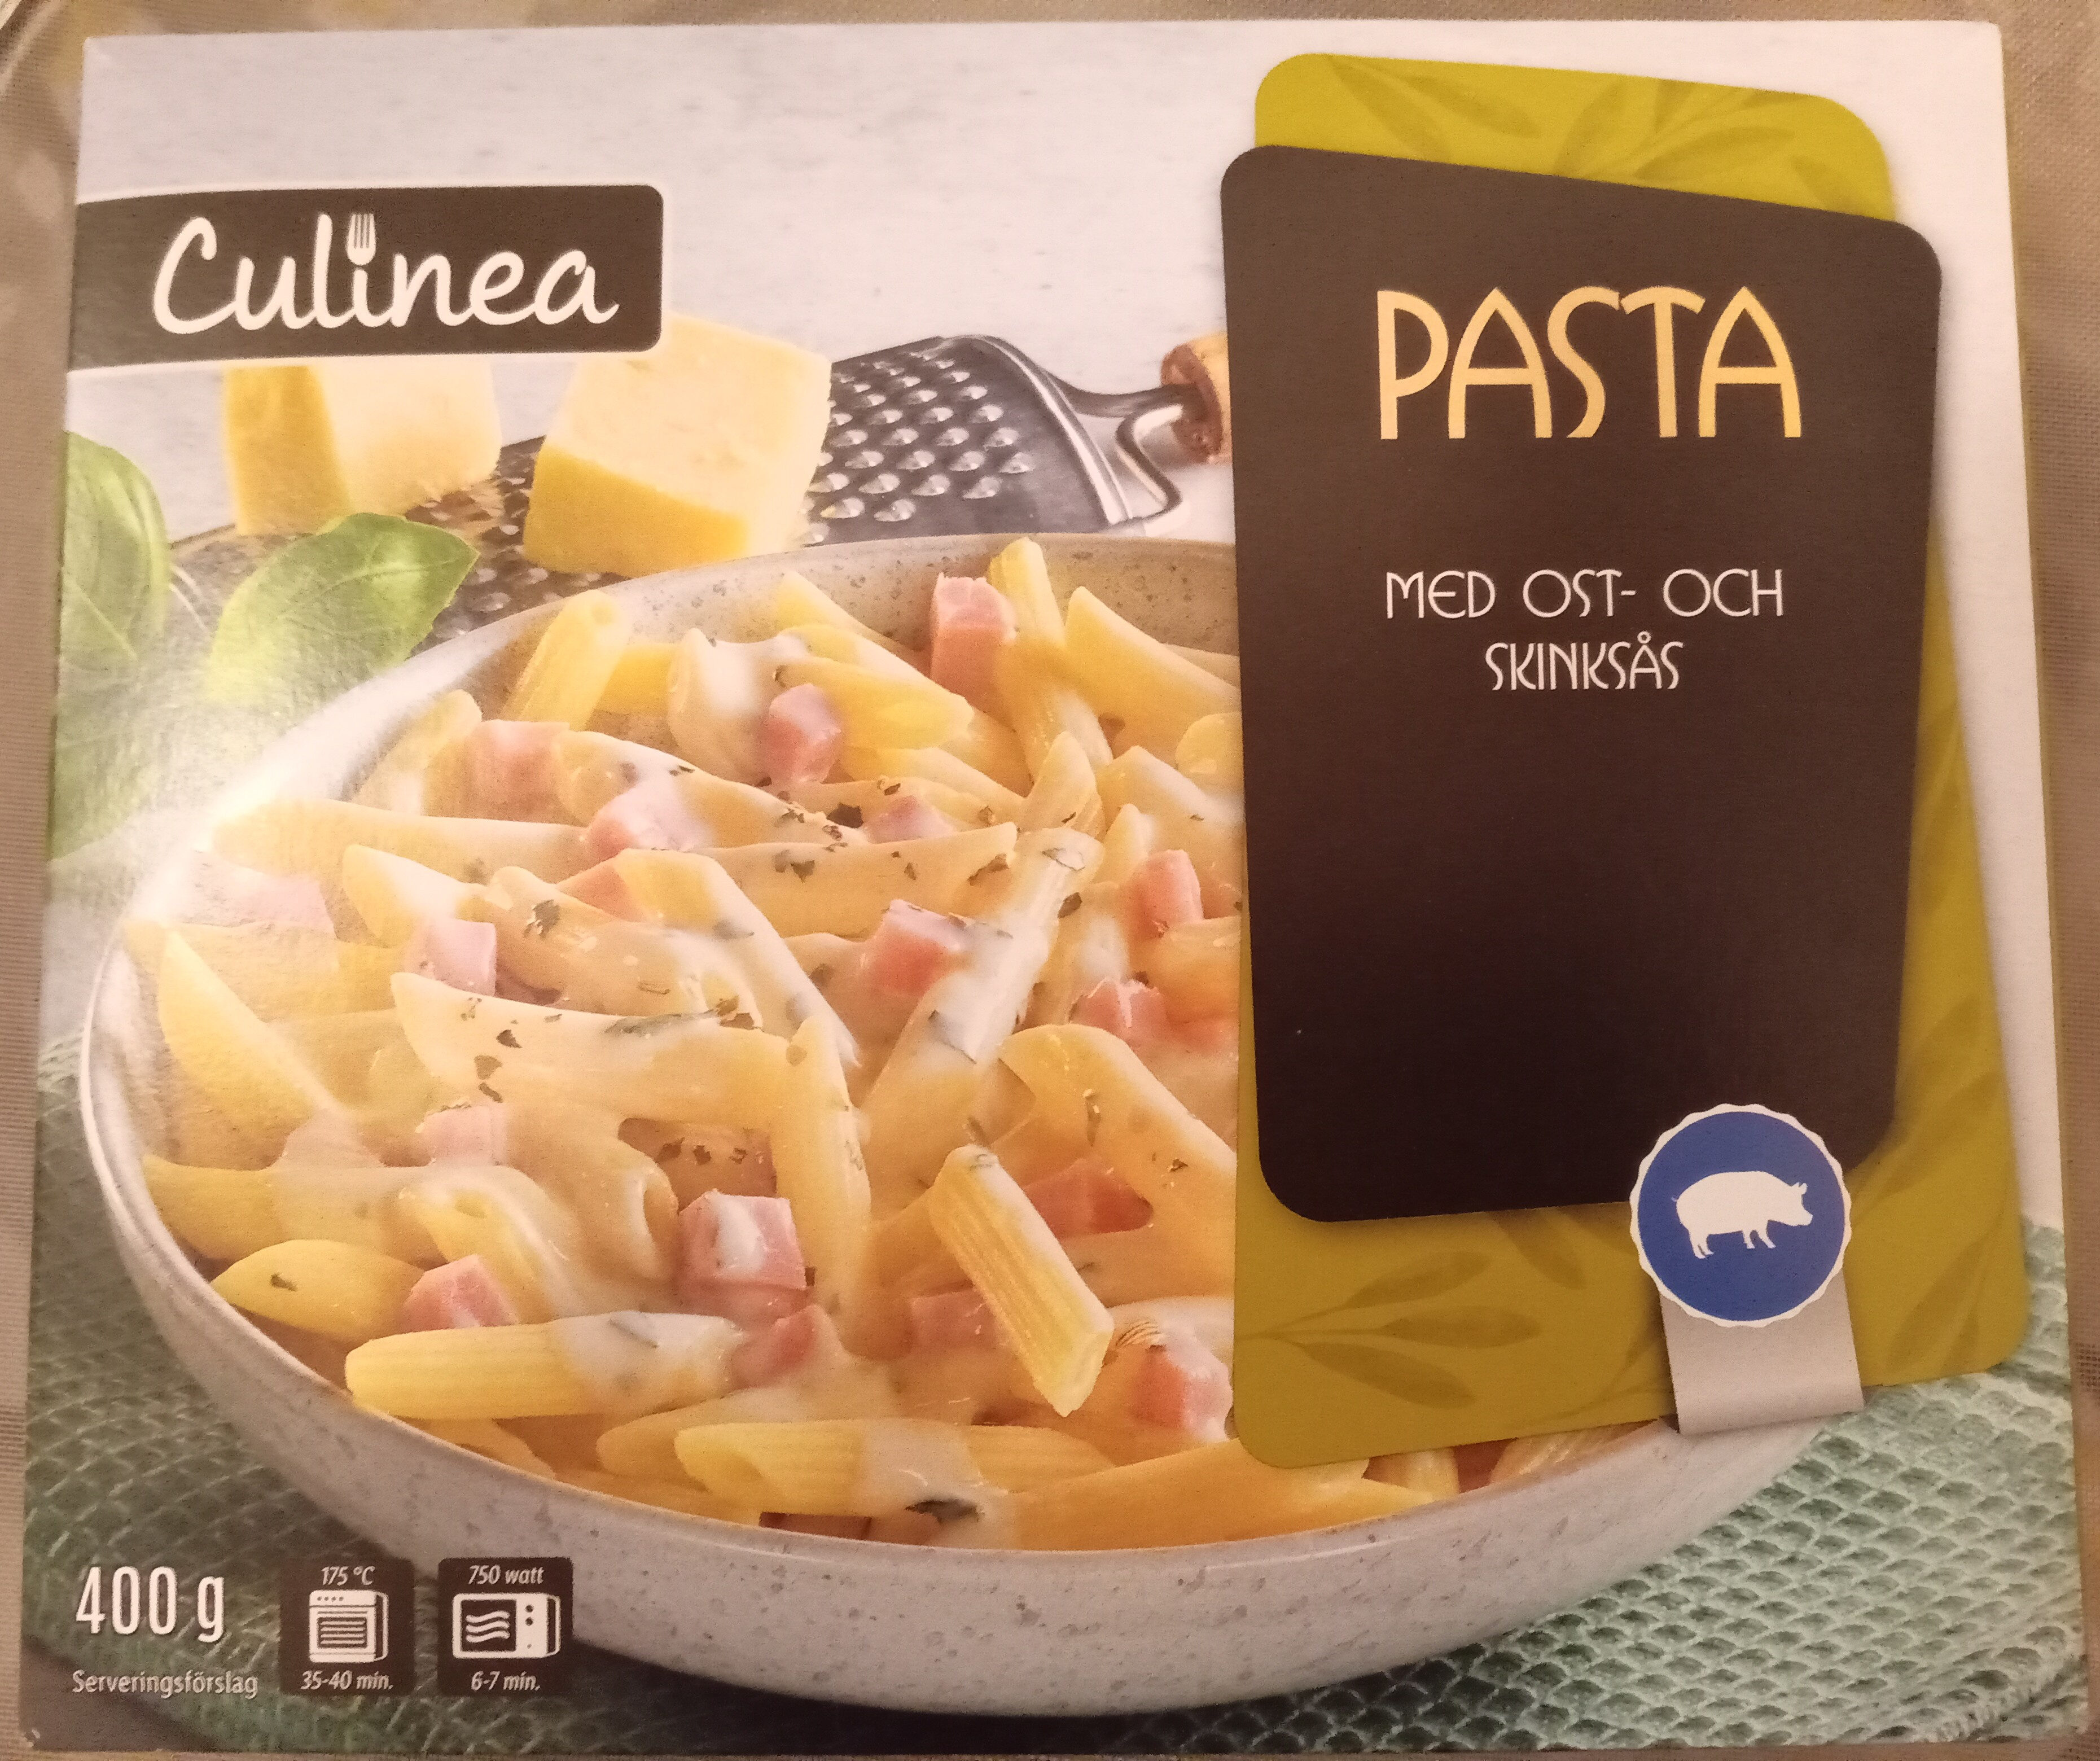 Culinea Pasta med ost- och skinksås - Produkt